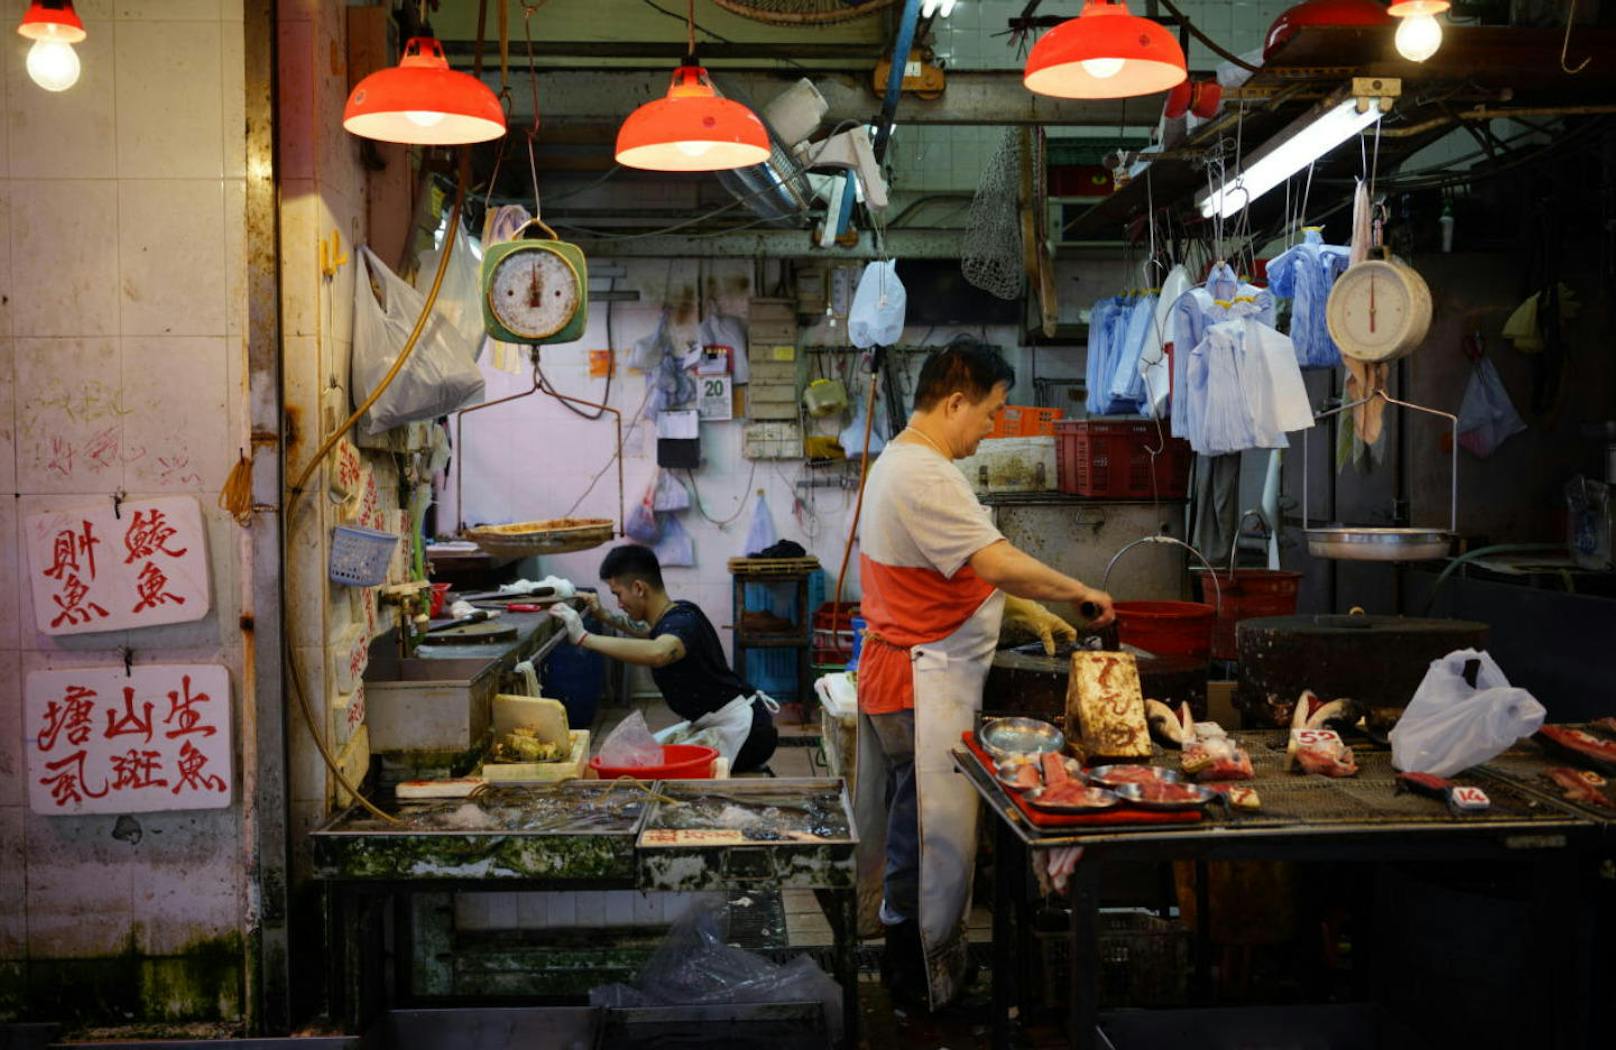 Der Distrikt ist der Hotspot für Foodies schlechthin in Hongkong. An jeder Ecke gibt es Streetfood, kleine Märkte und Restaurants.